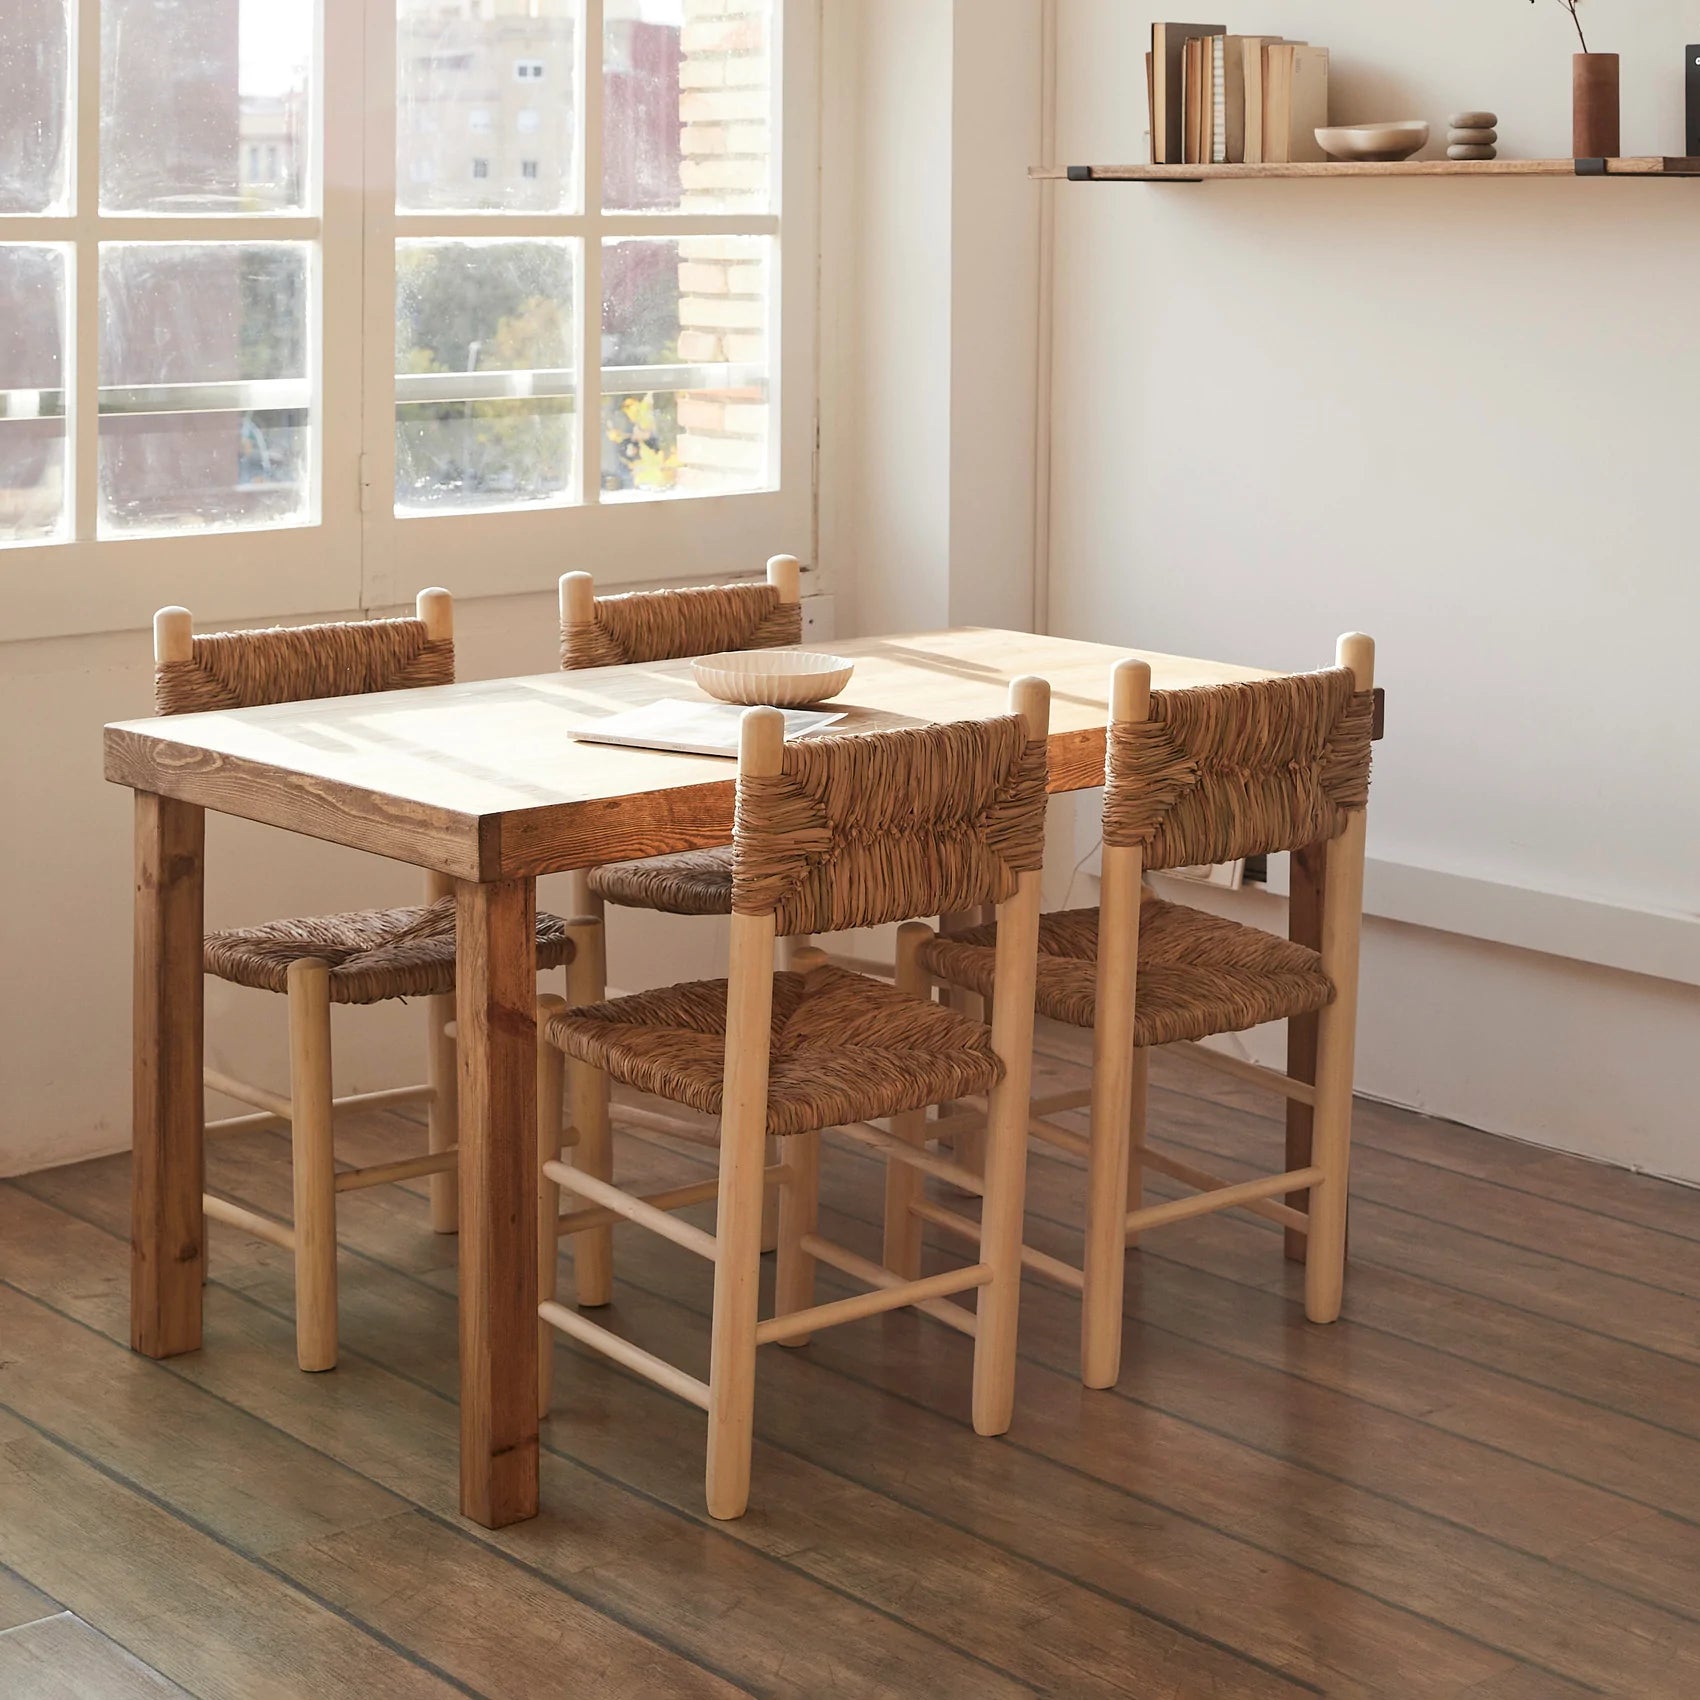 Mesa de comedor de madera recuperada y sillas de fibras naturales.